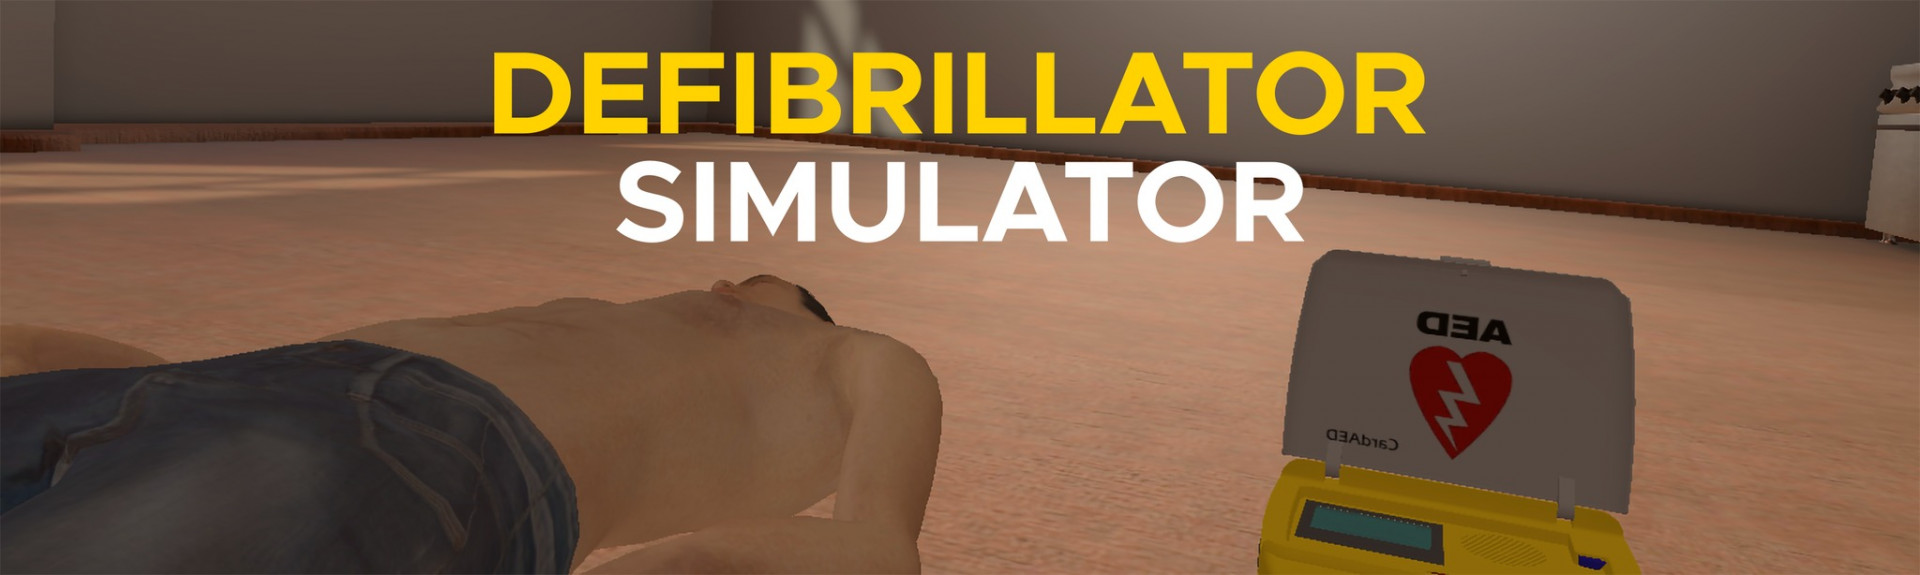 Defibrillator Simulator